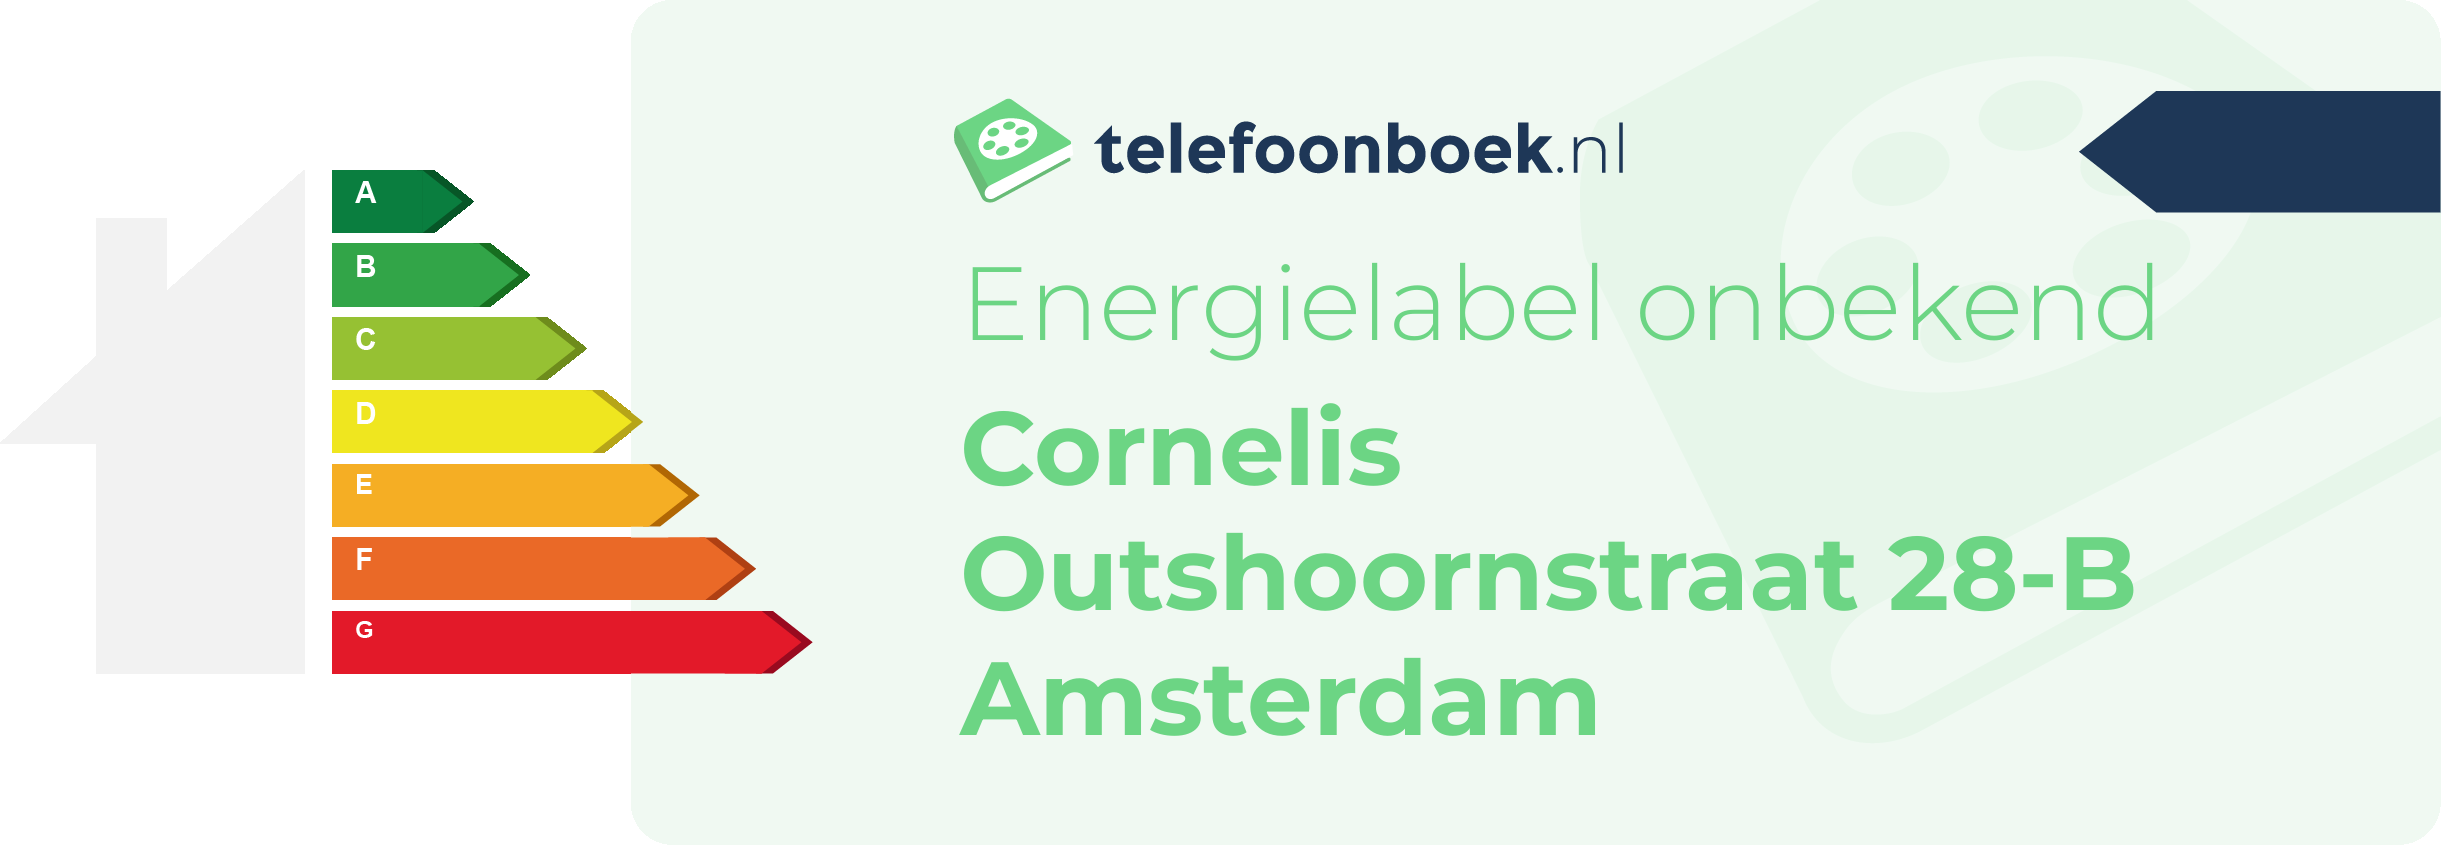 Energielabel Cornelis Outshoornstraat 28-B Amsterdam